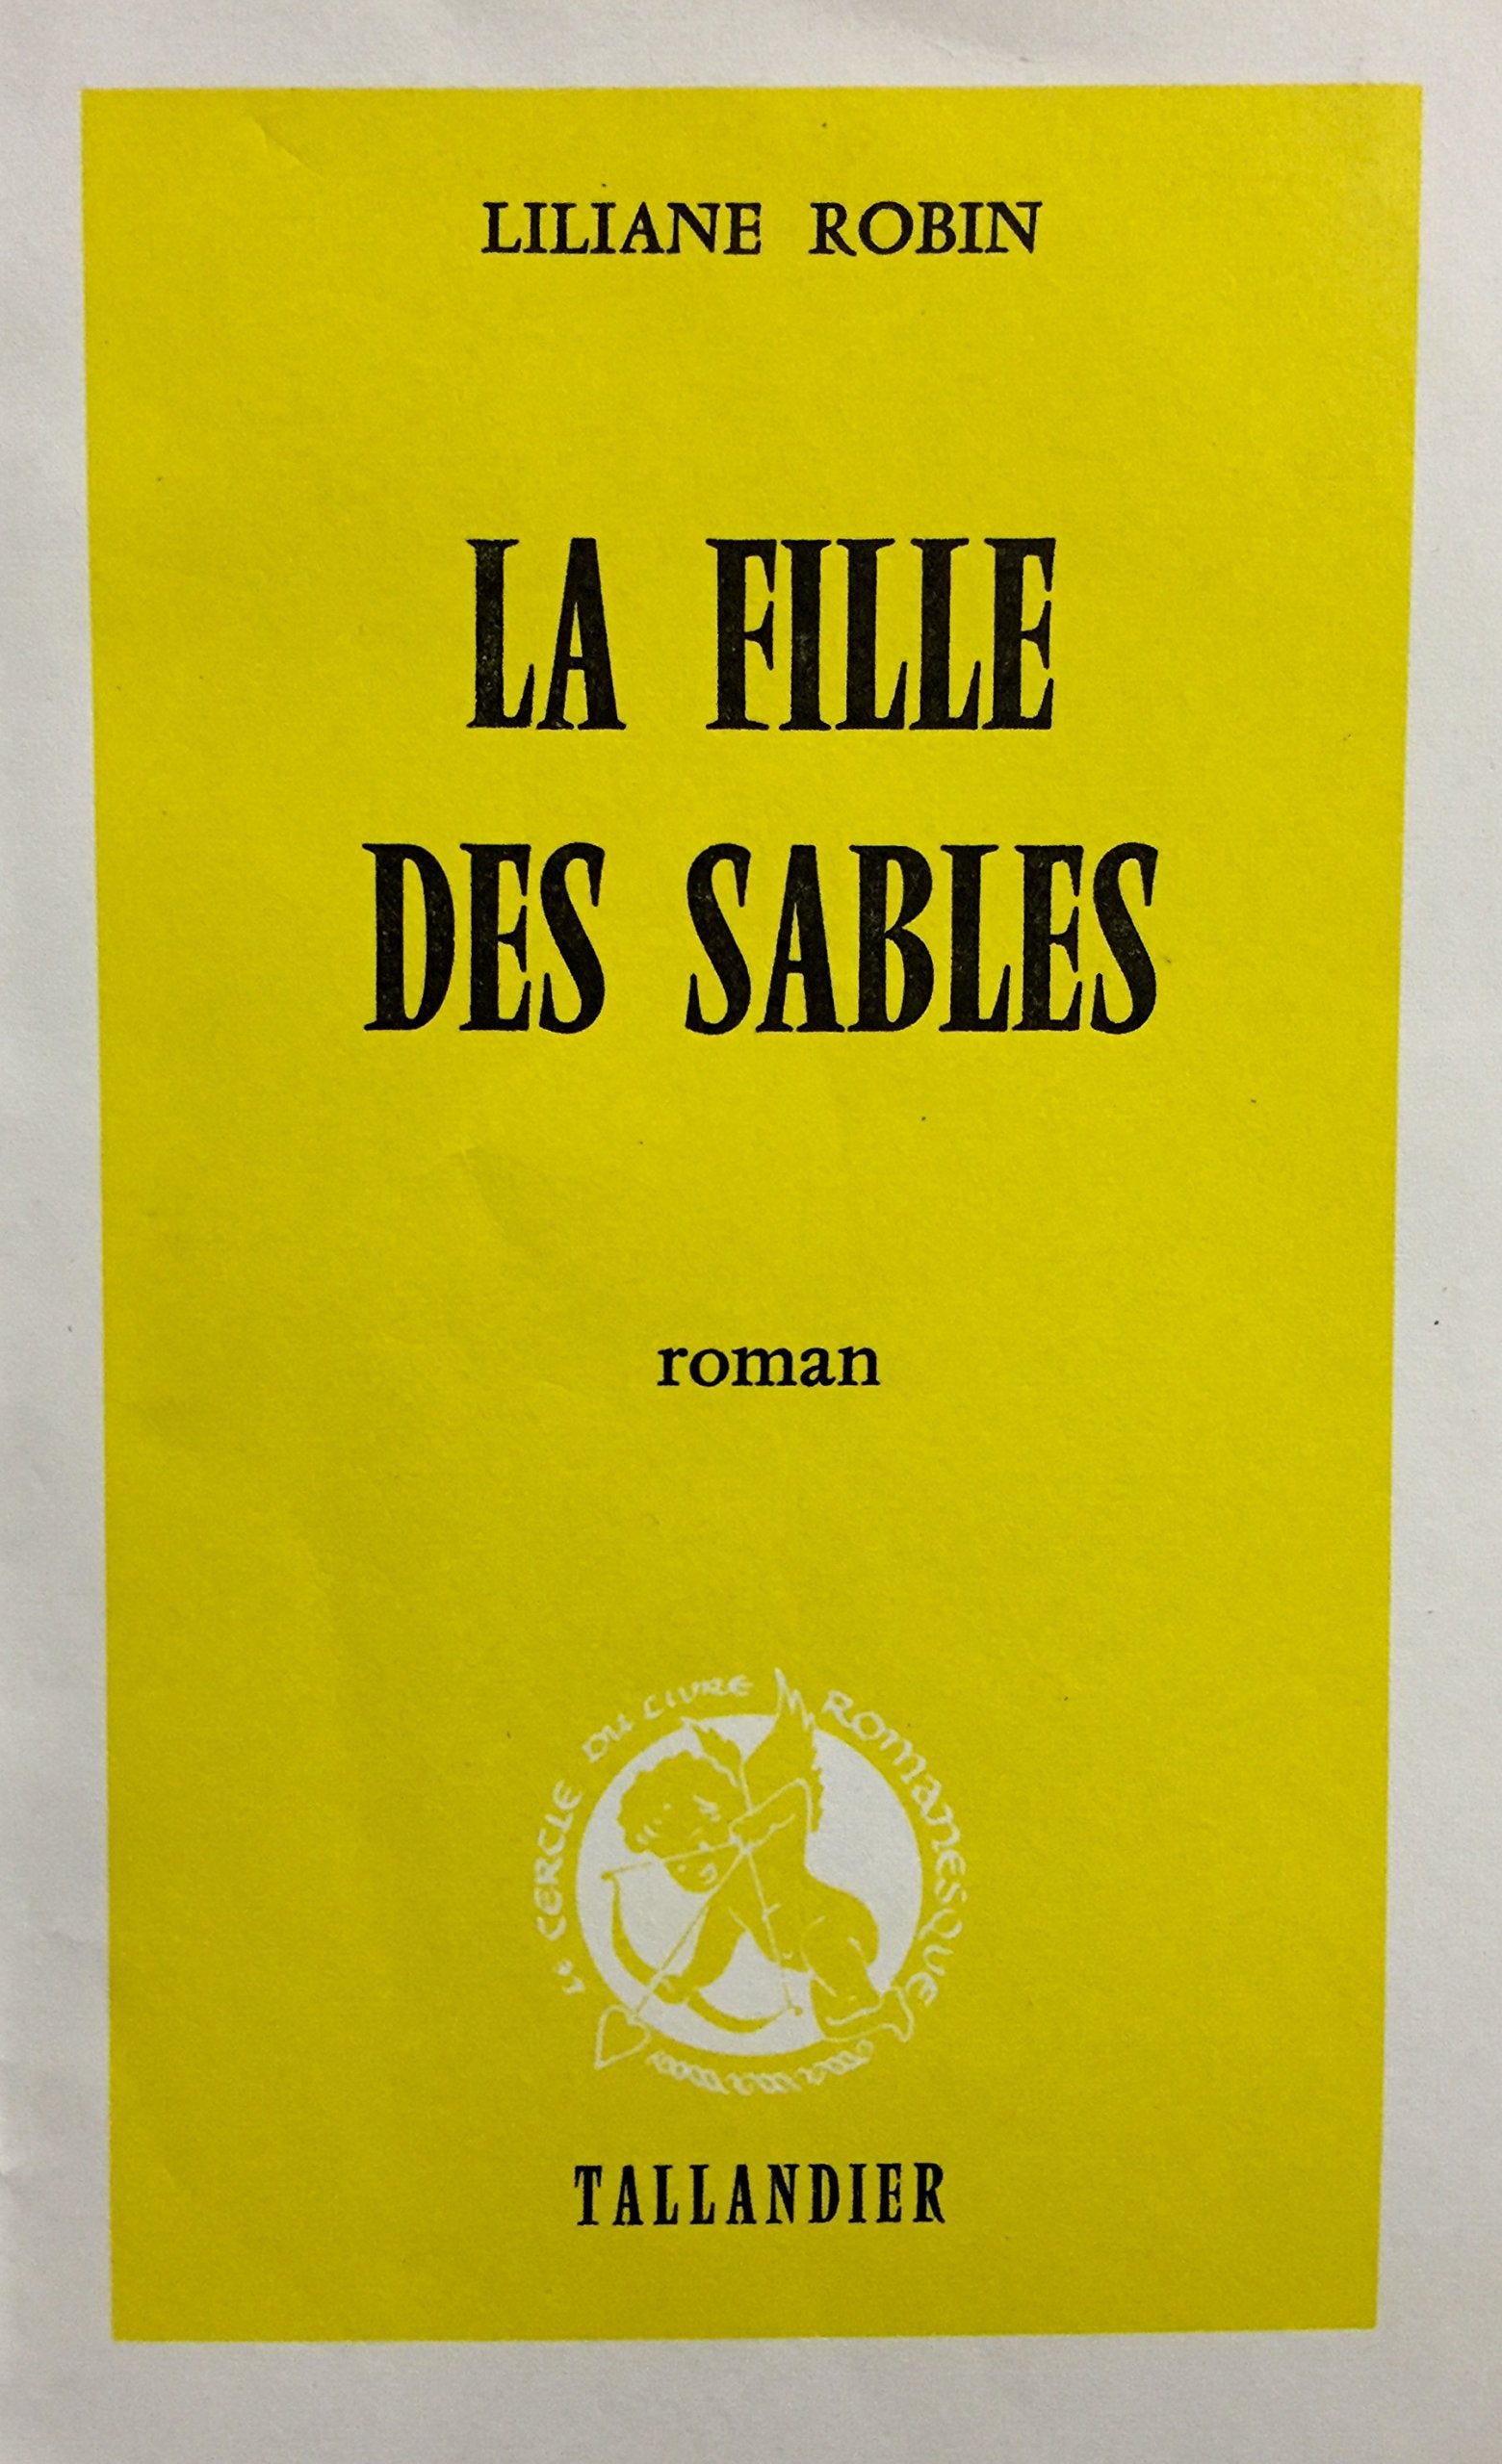 Livre ISBN 223500766X La fille des sables (Liliane Robin)